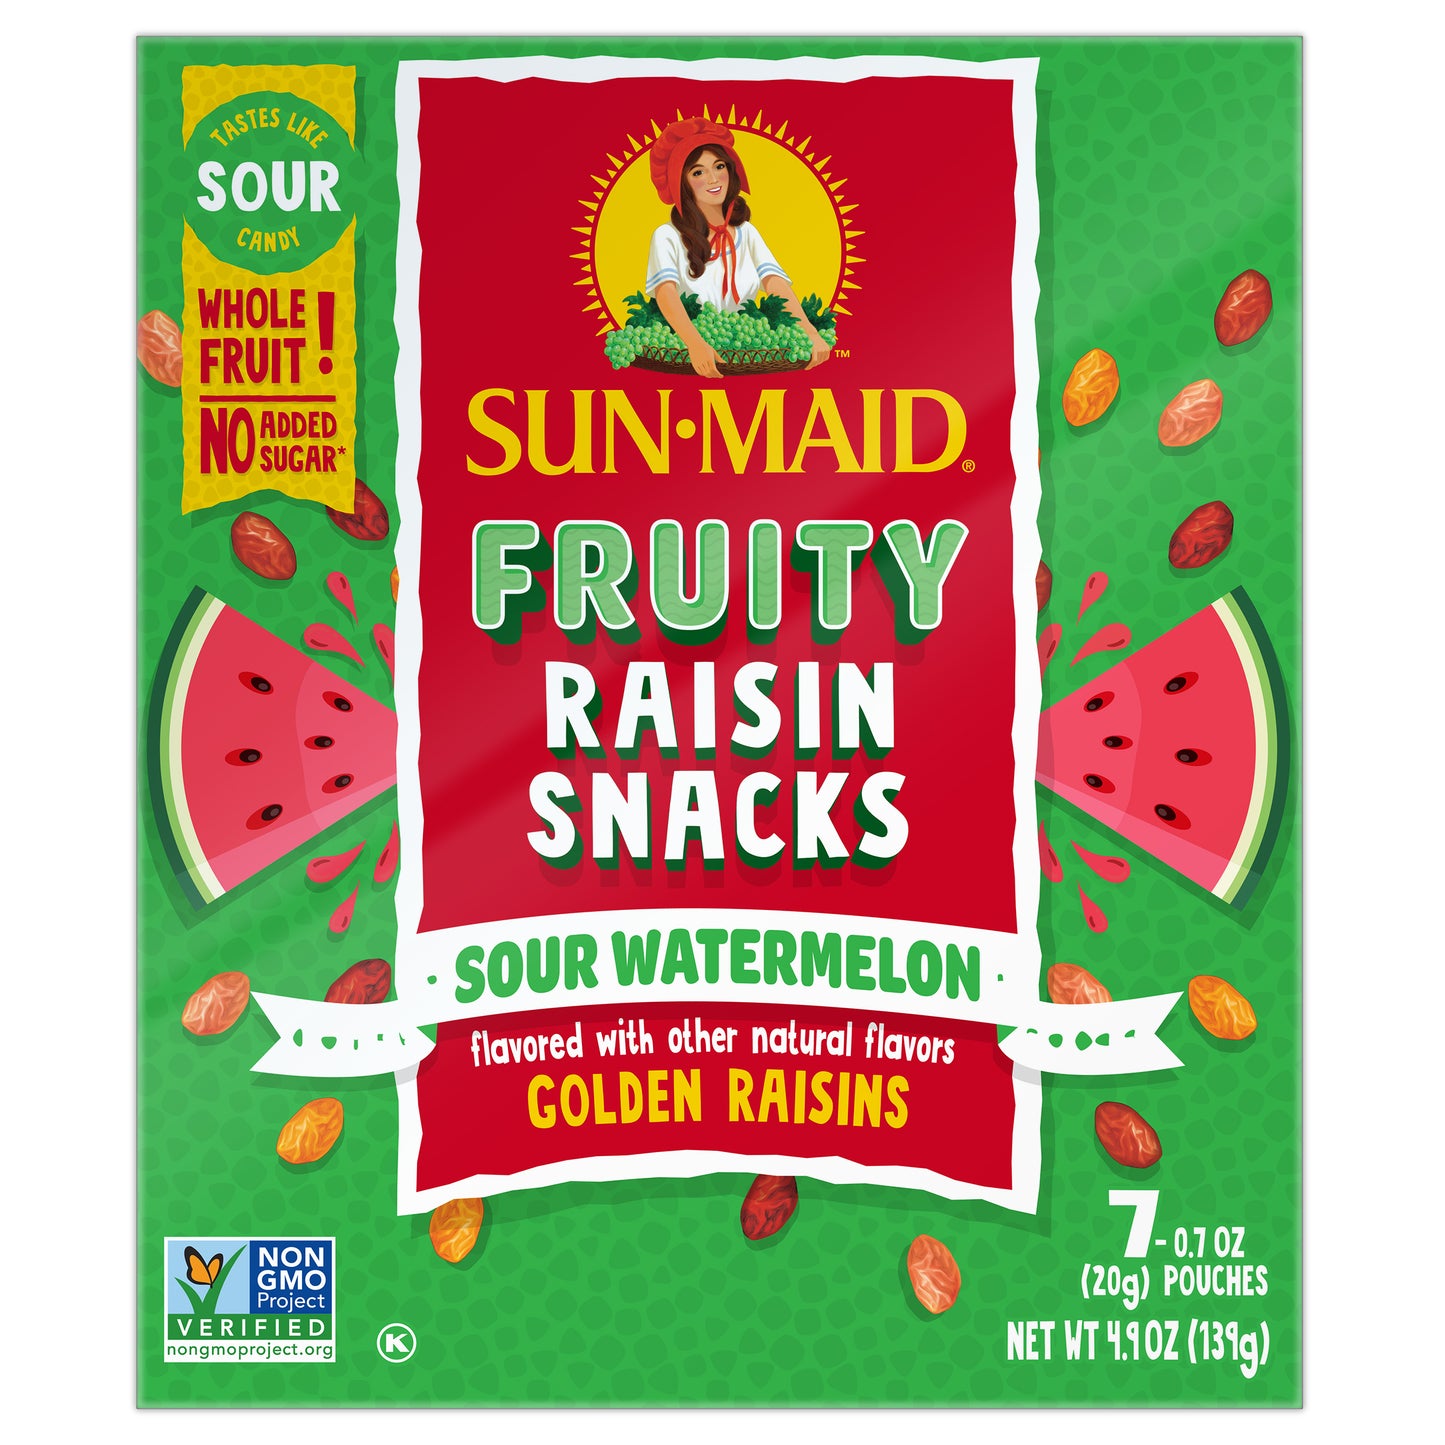 Sun-Maid Fruity Raisin Snacks Sour Watermelon Golden Raisins 7 Pouches (20gm Each)